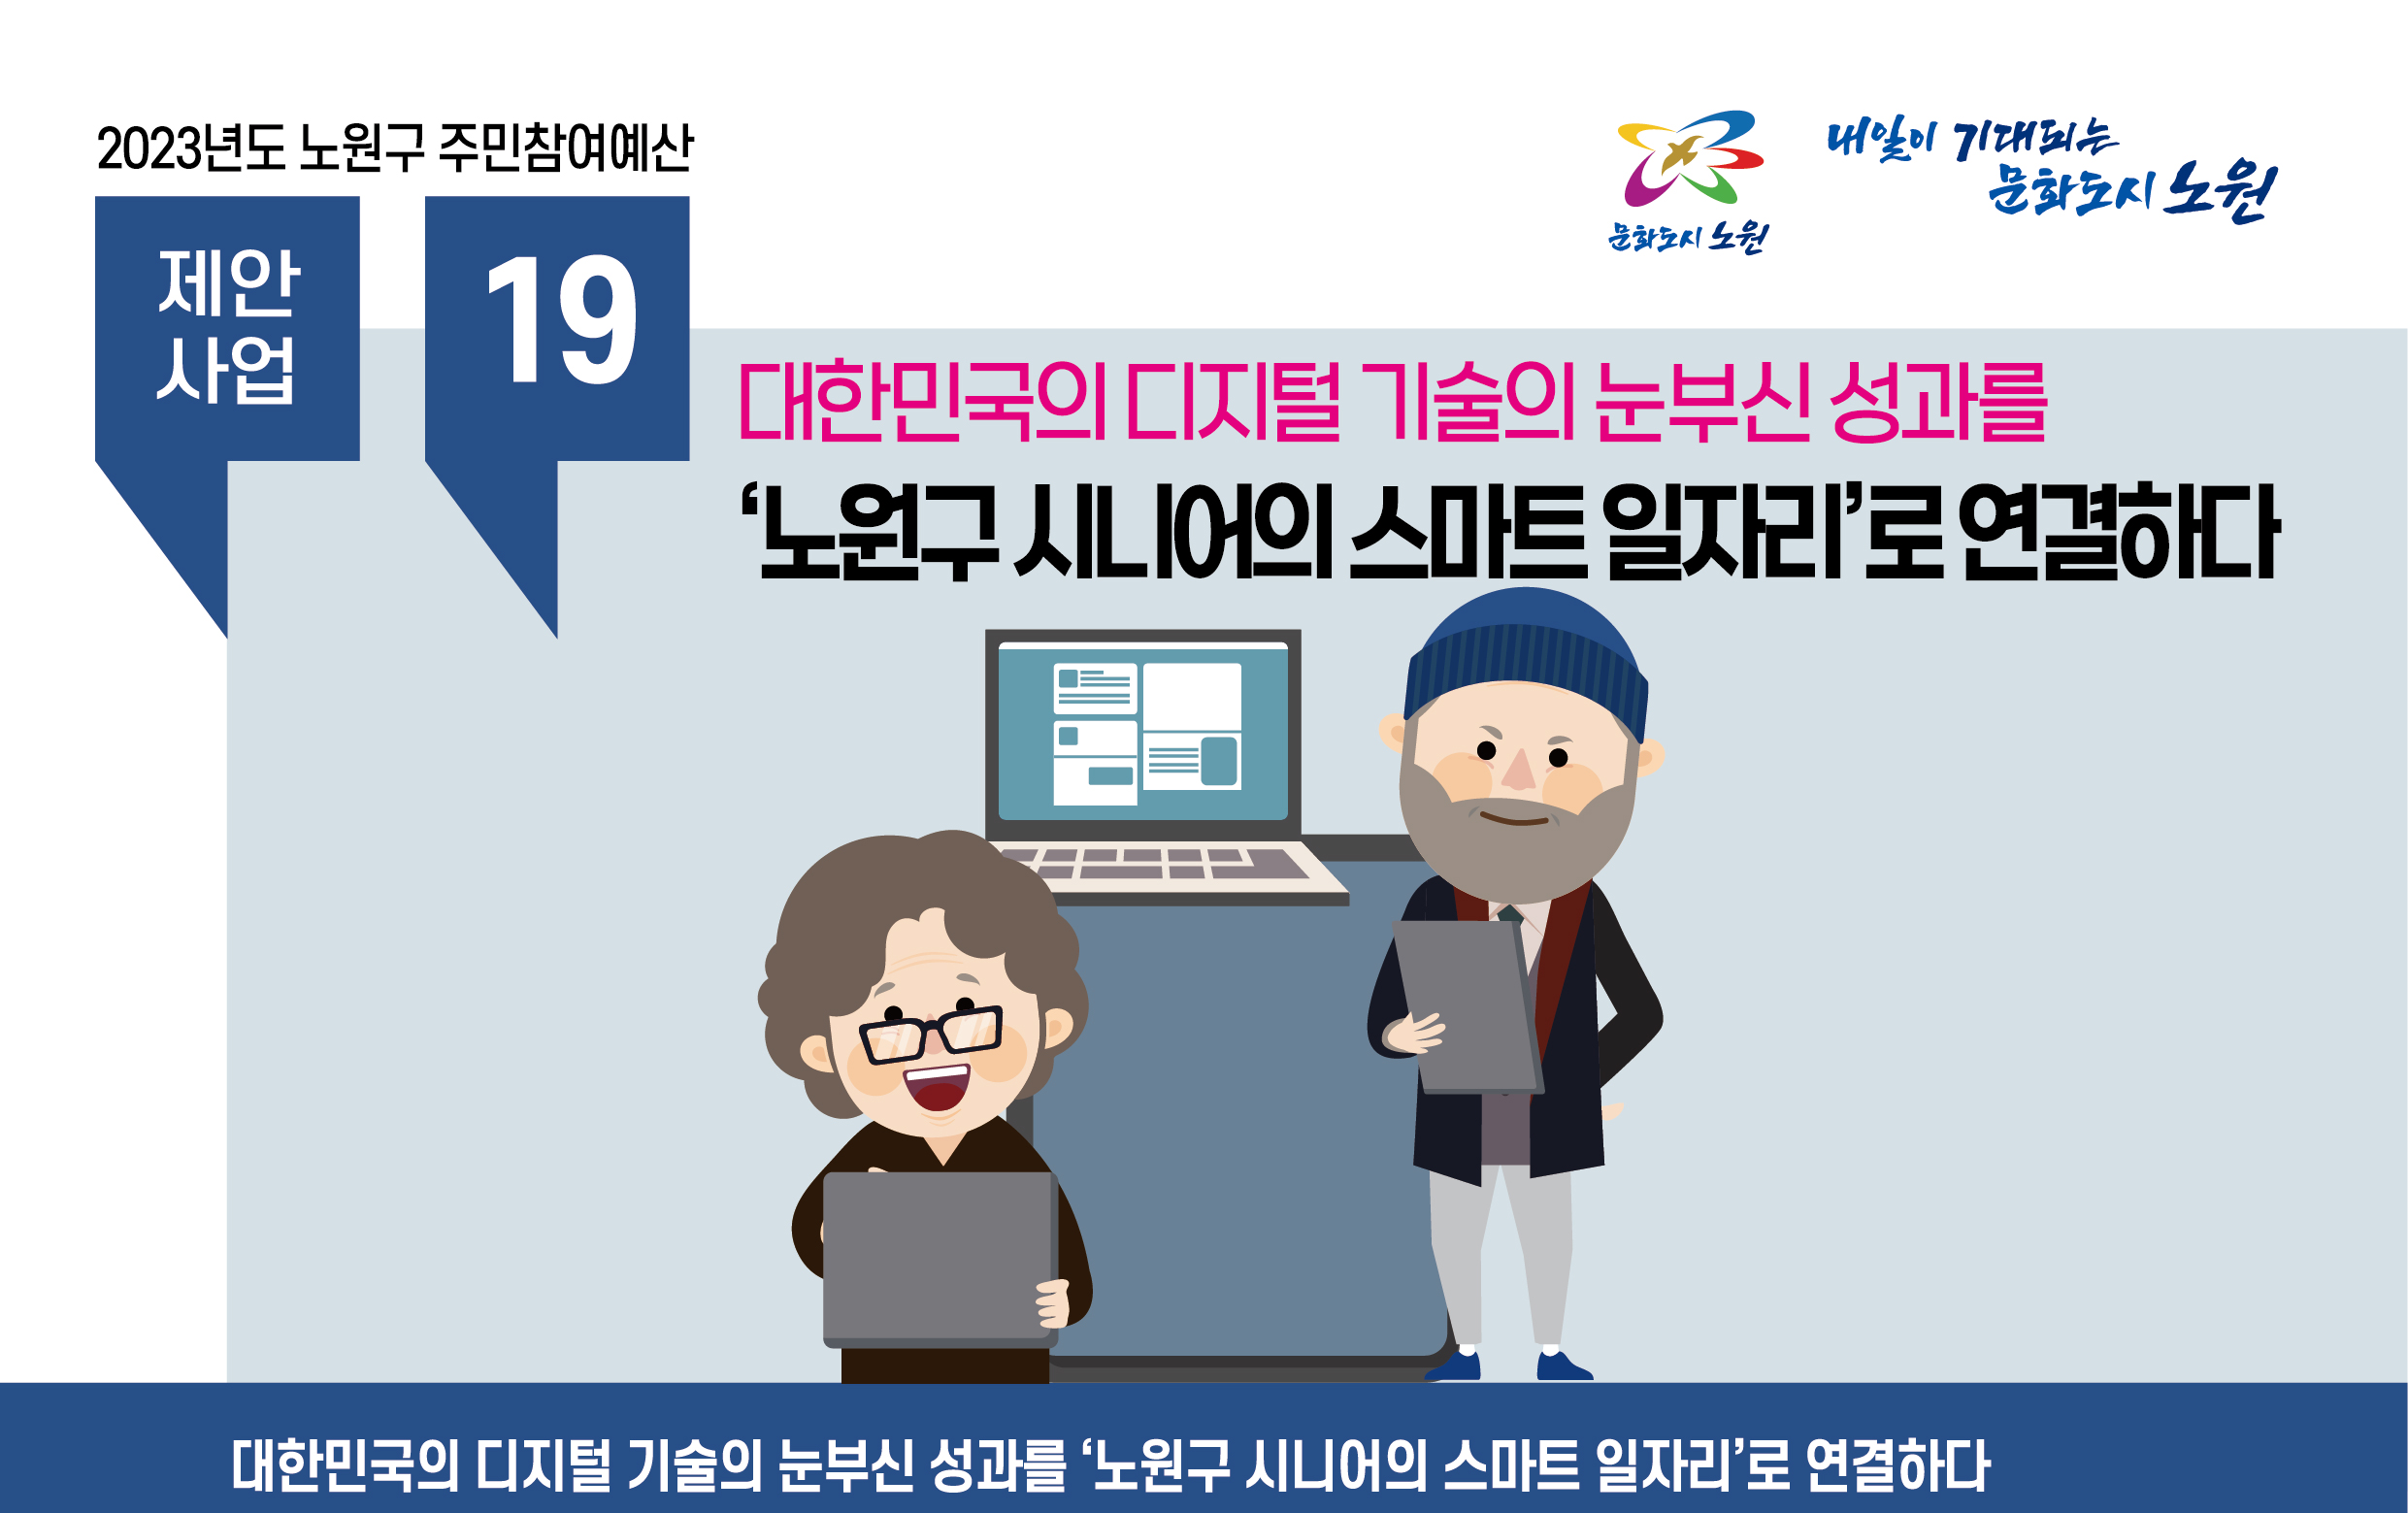 대한민국의 디지털 기술의 눈부신 성과를  ‘노원구 시니어의 스마트 일자리’로 연결하다